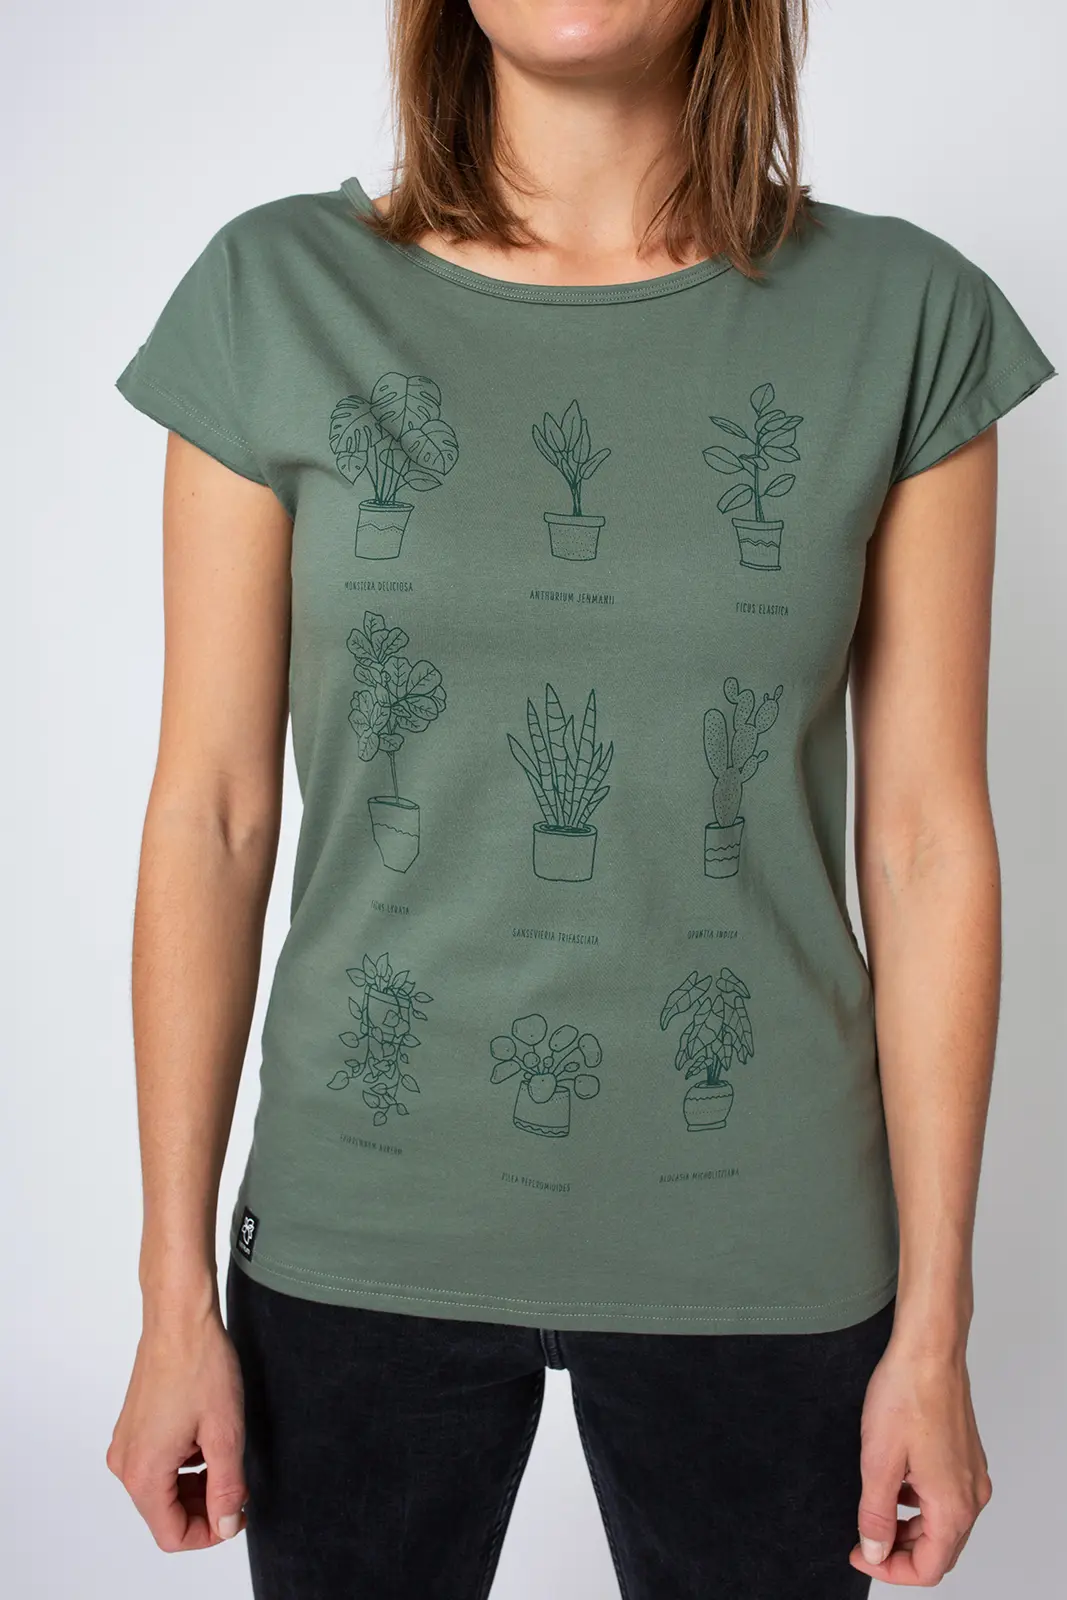 T-Shirt Lea Pflanzengeschichte graugruen